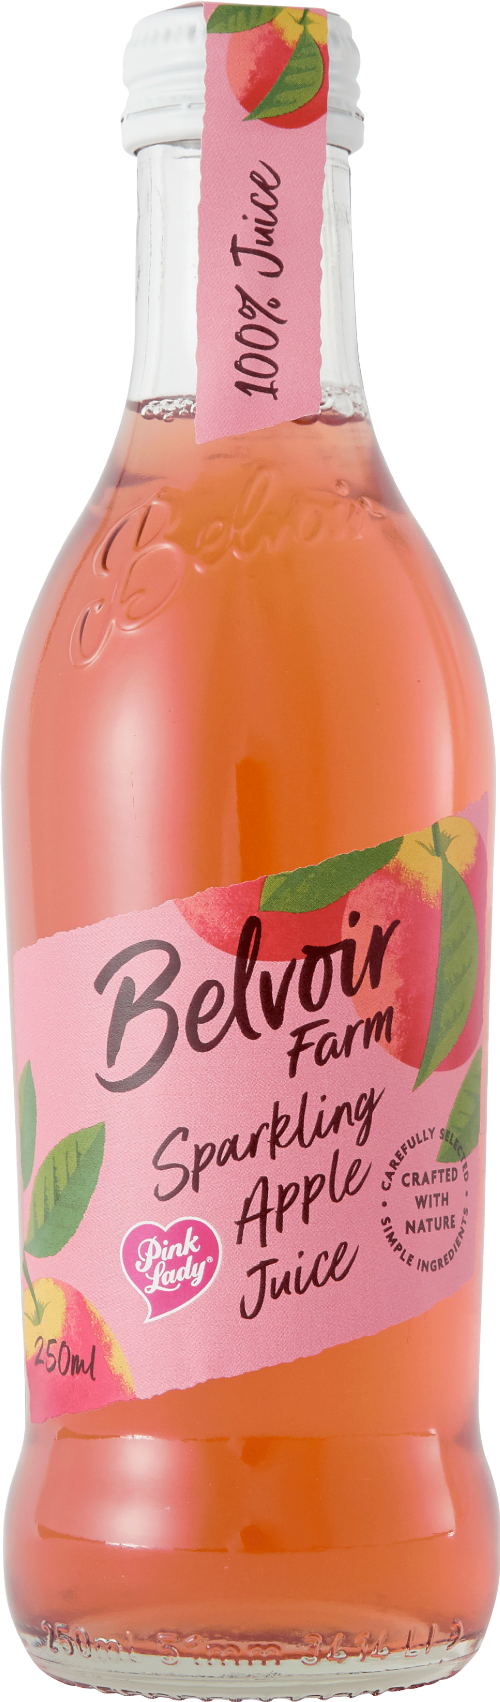 BELVOIR Sparkling Pink Lady Apple Juice 25cl